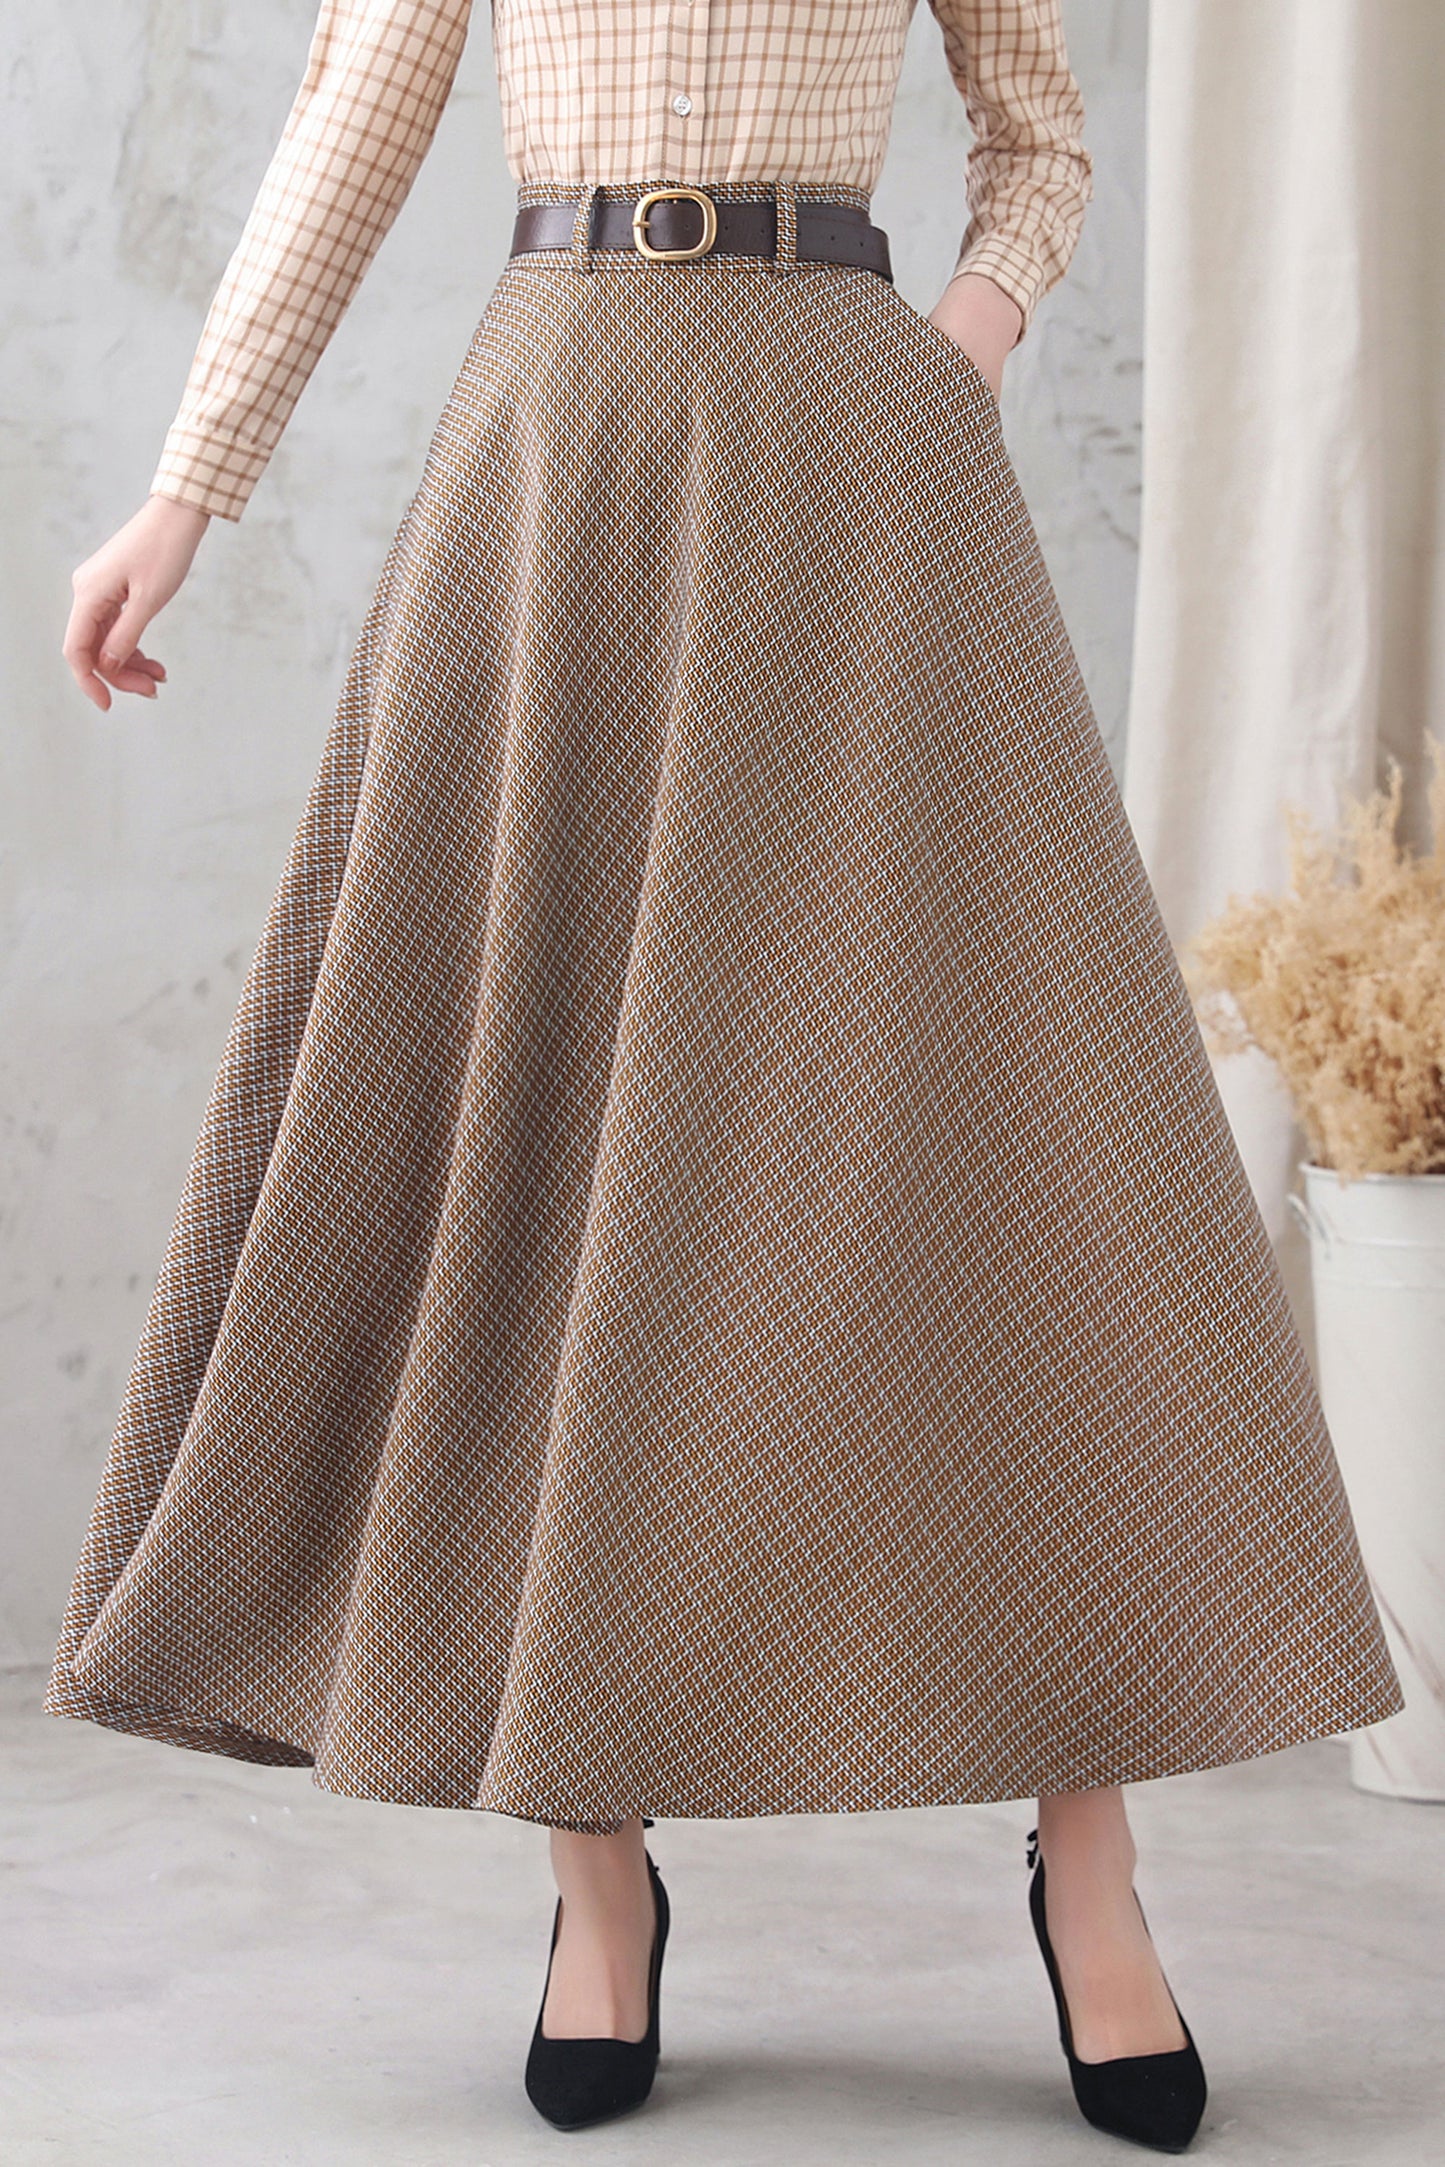 High Waisted Long Maxi Skirt Women 3348